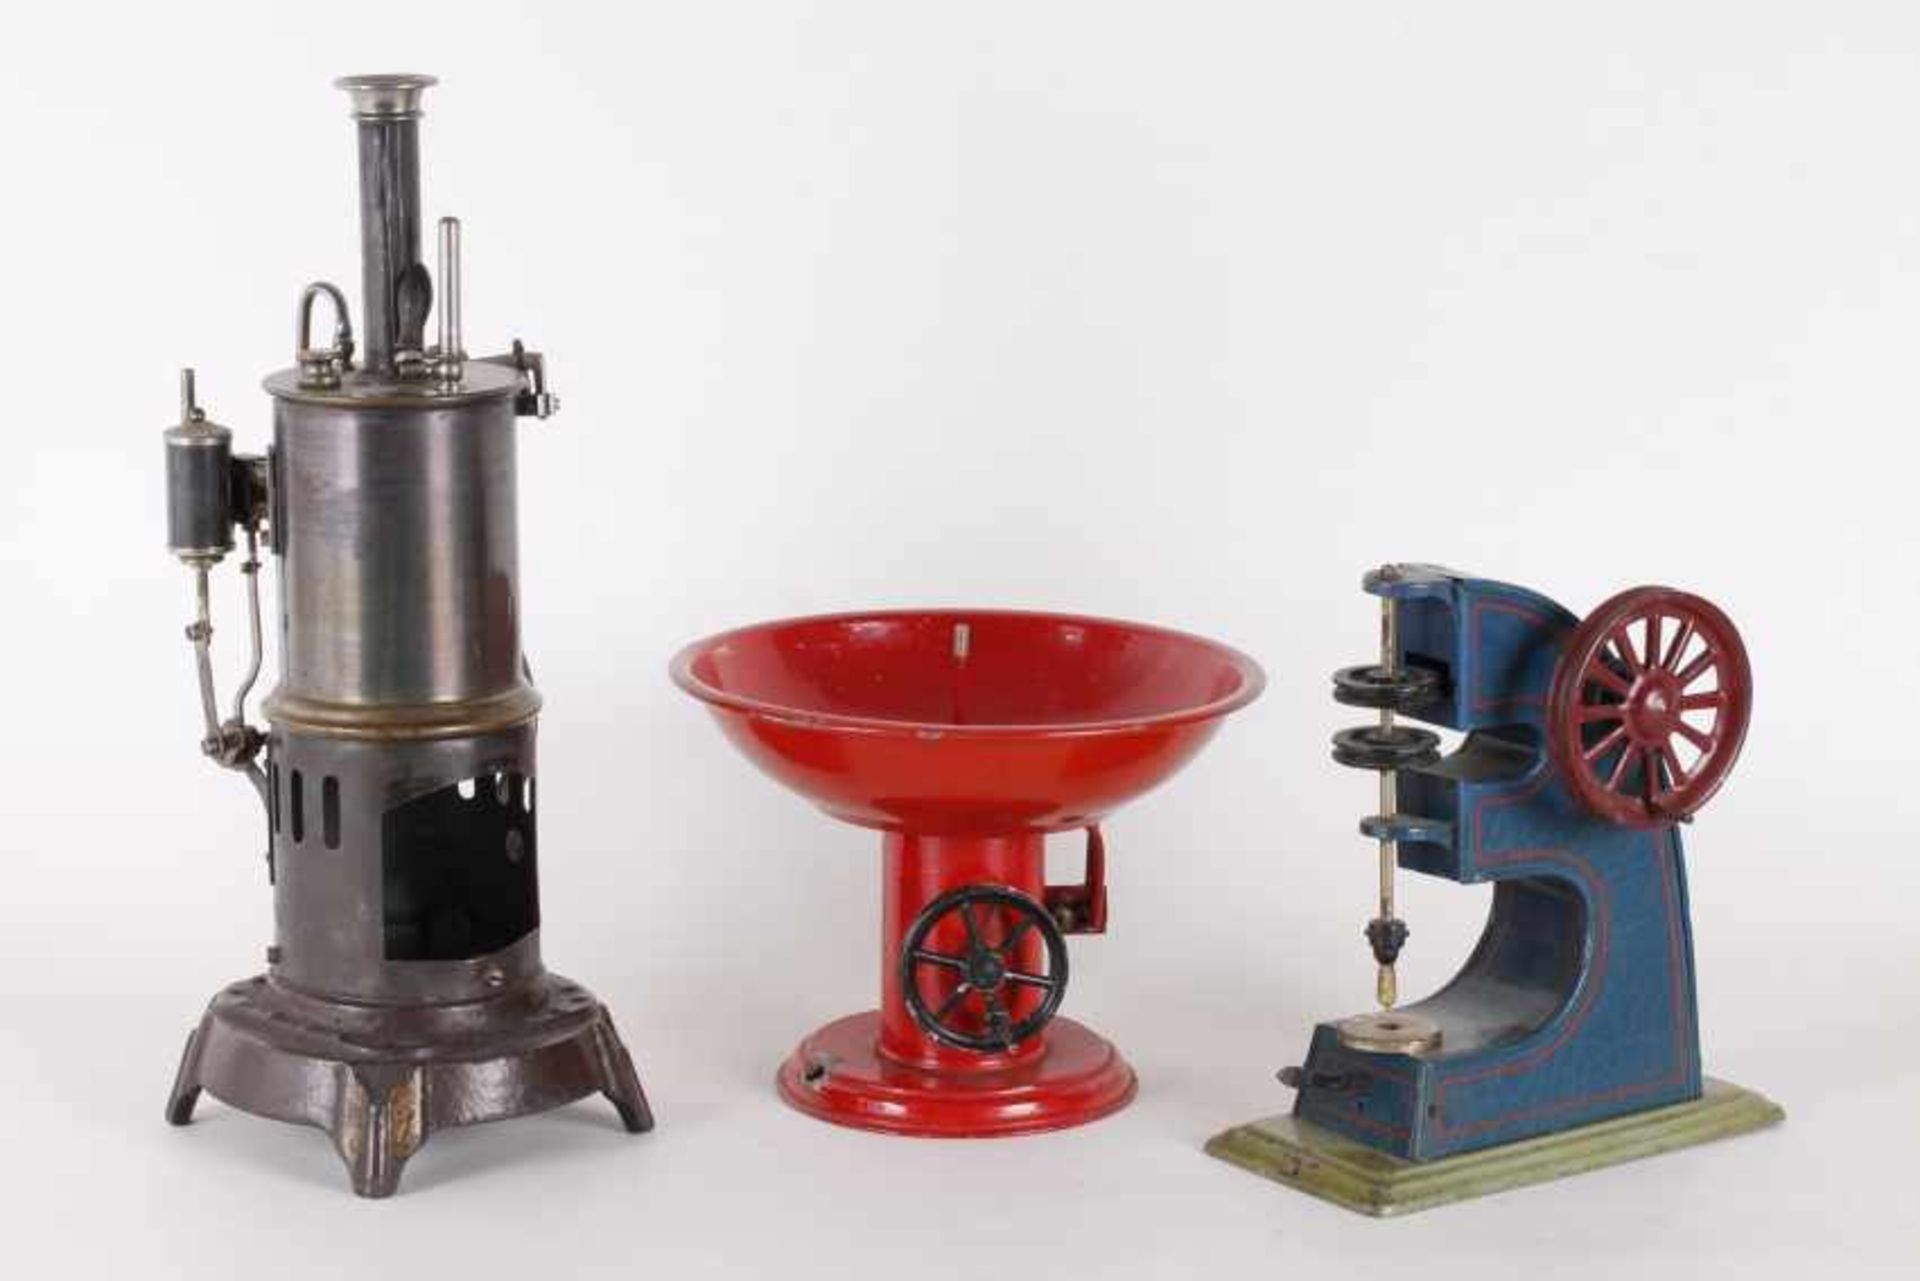 Dampfspielzeug, Dampfmaschine und zwei AntrioebsmodelleDampfspielzeug, Falk 459/00, stehende